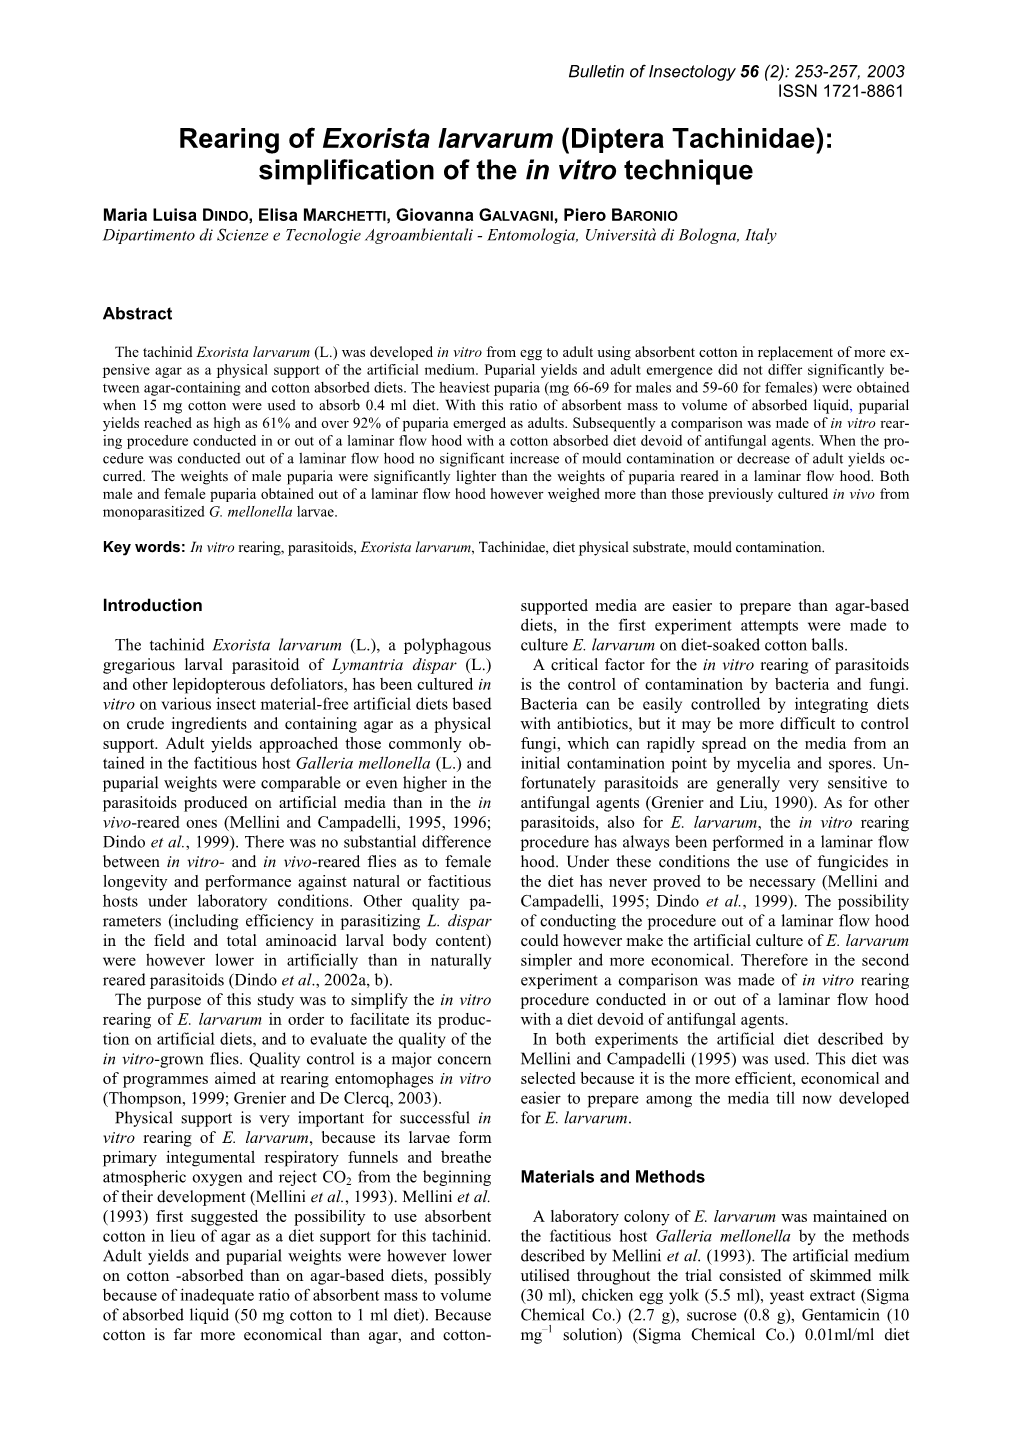 Rearing of Exorista Larvarum (Diptera Tachinidae): Simplification of the in Vitro Technique